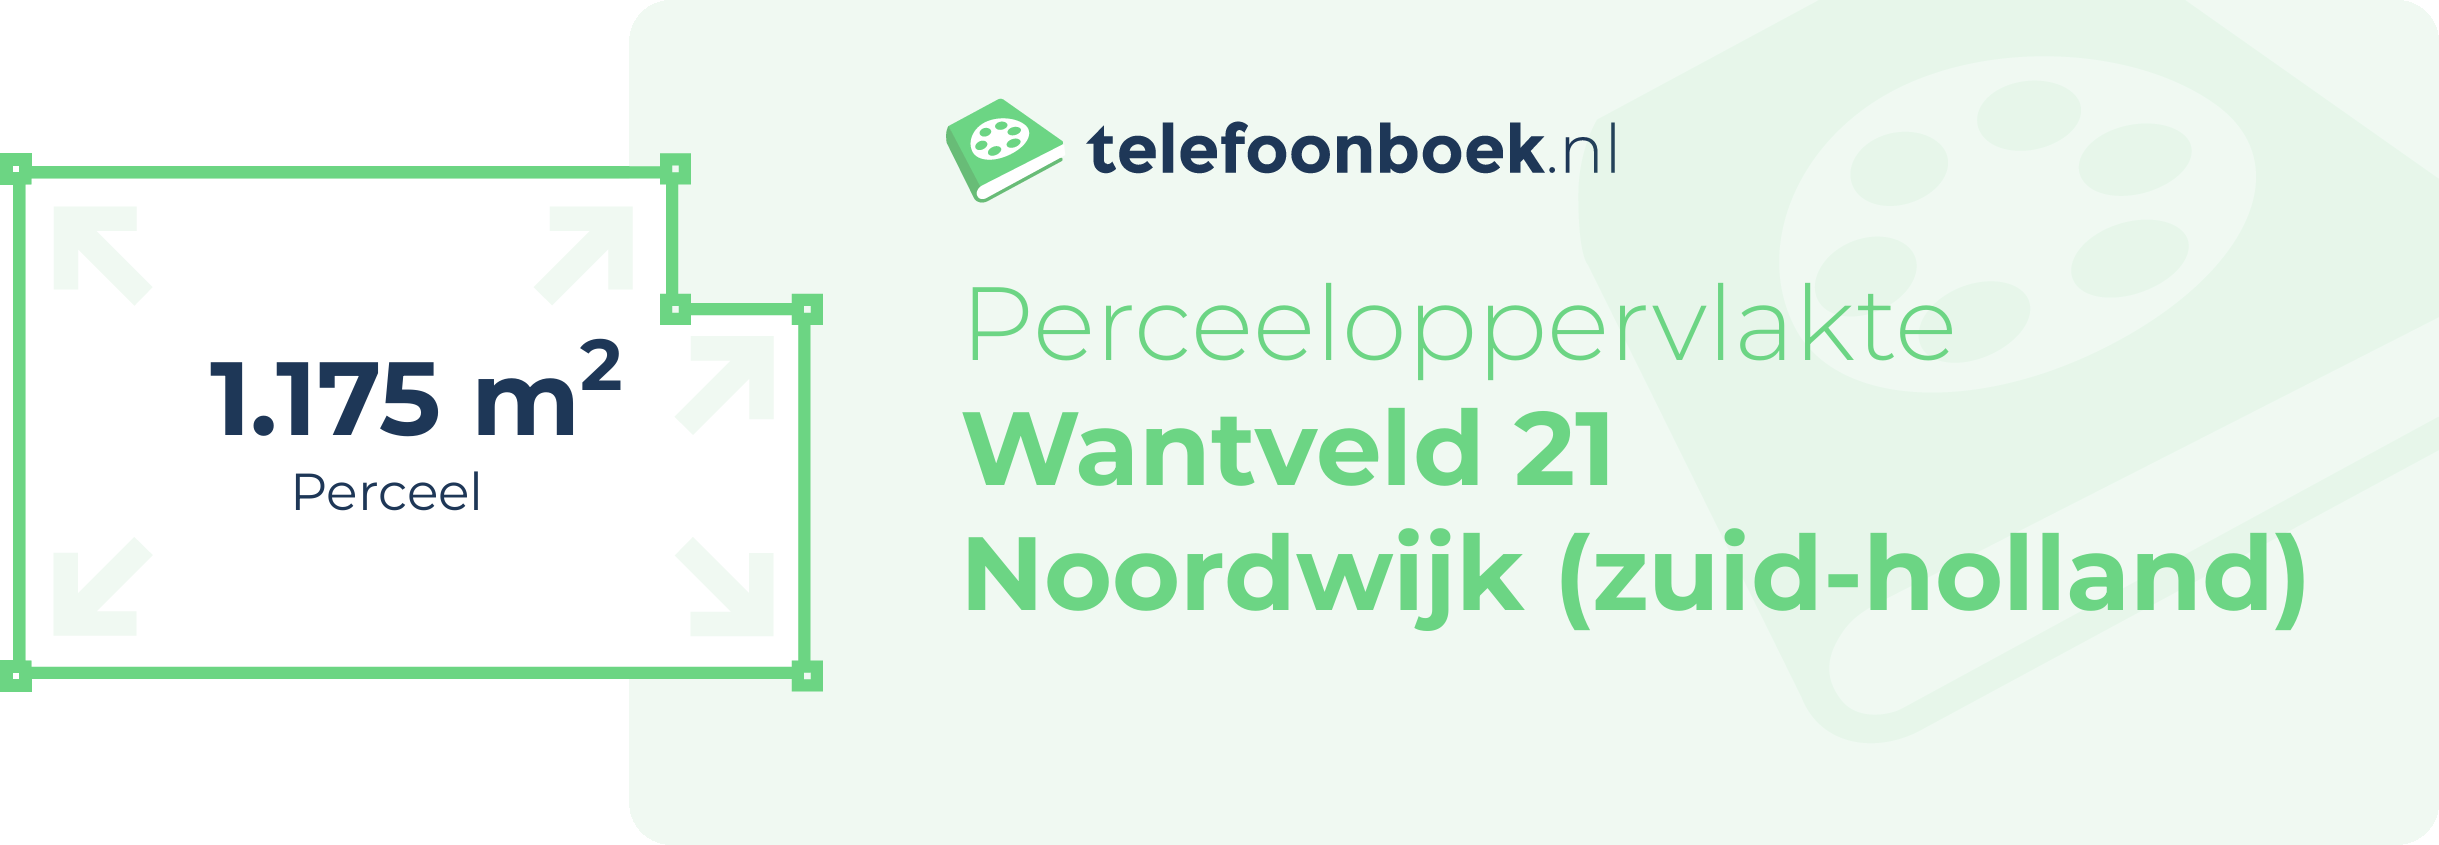 Perceeloppervlakte Wantveld 21 Noordwijk (Zuid-Holland)